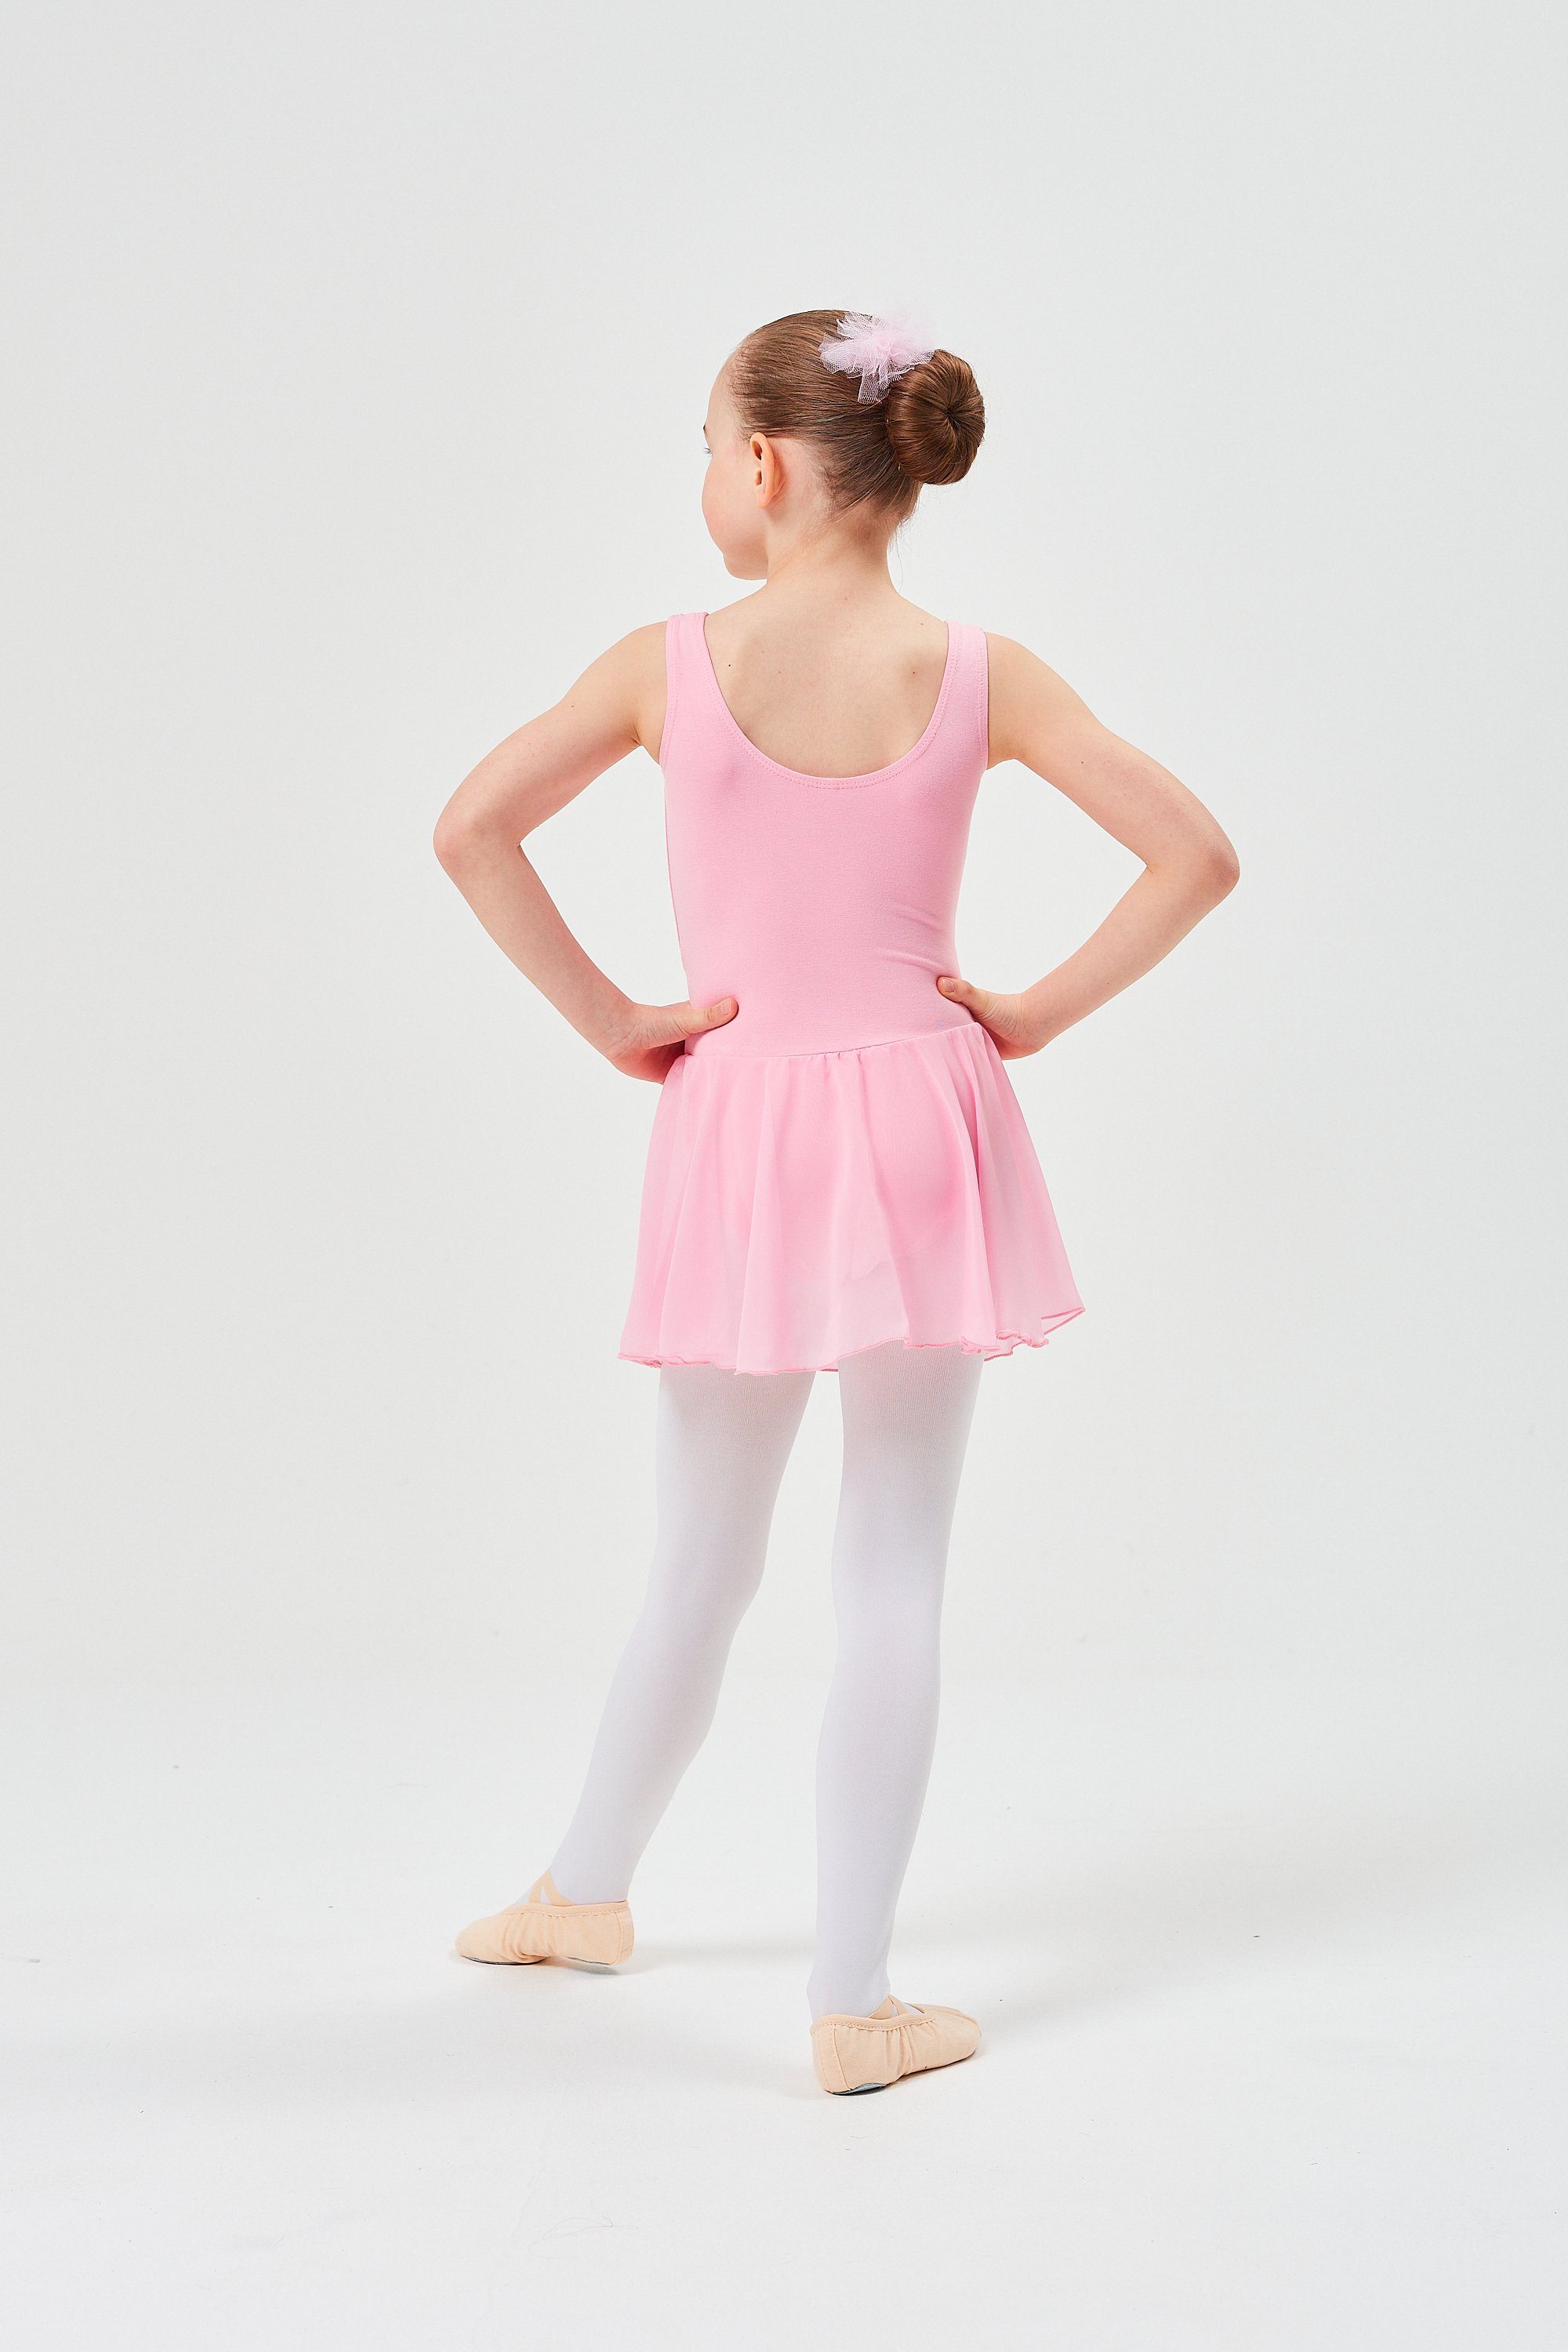 für Baumwollmaterial tanzmuster aus Mädchen Chiffonkleid mit Ballett Chiffon Minnie wunderbar Röckchen rosa weichem Ballettkleid Trikot